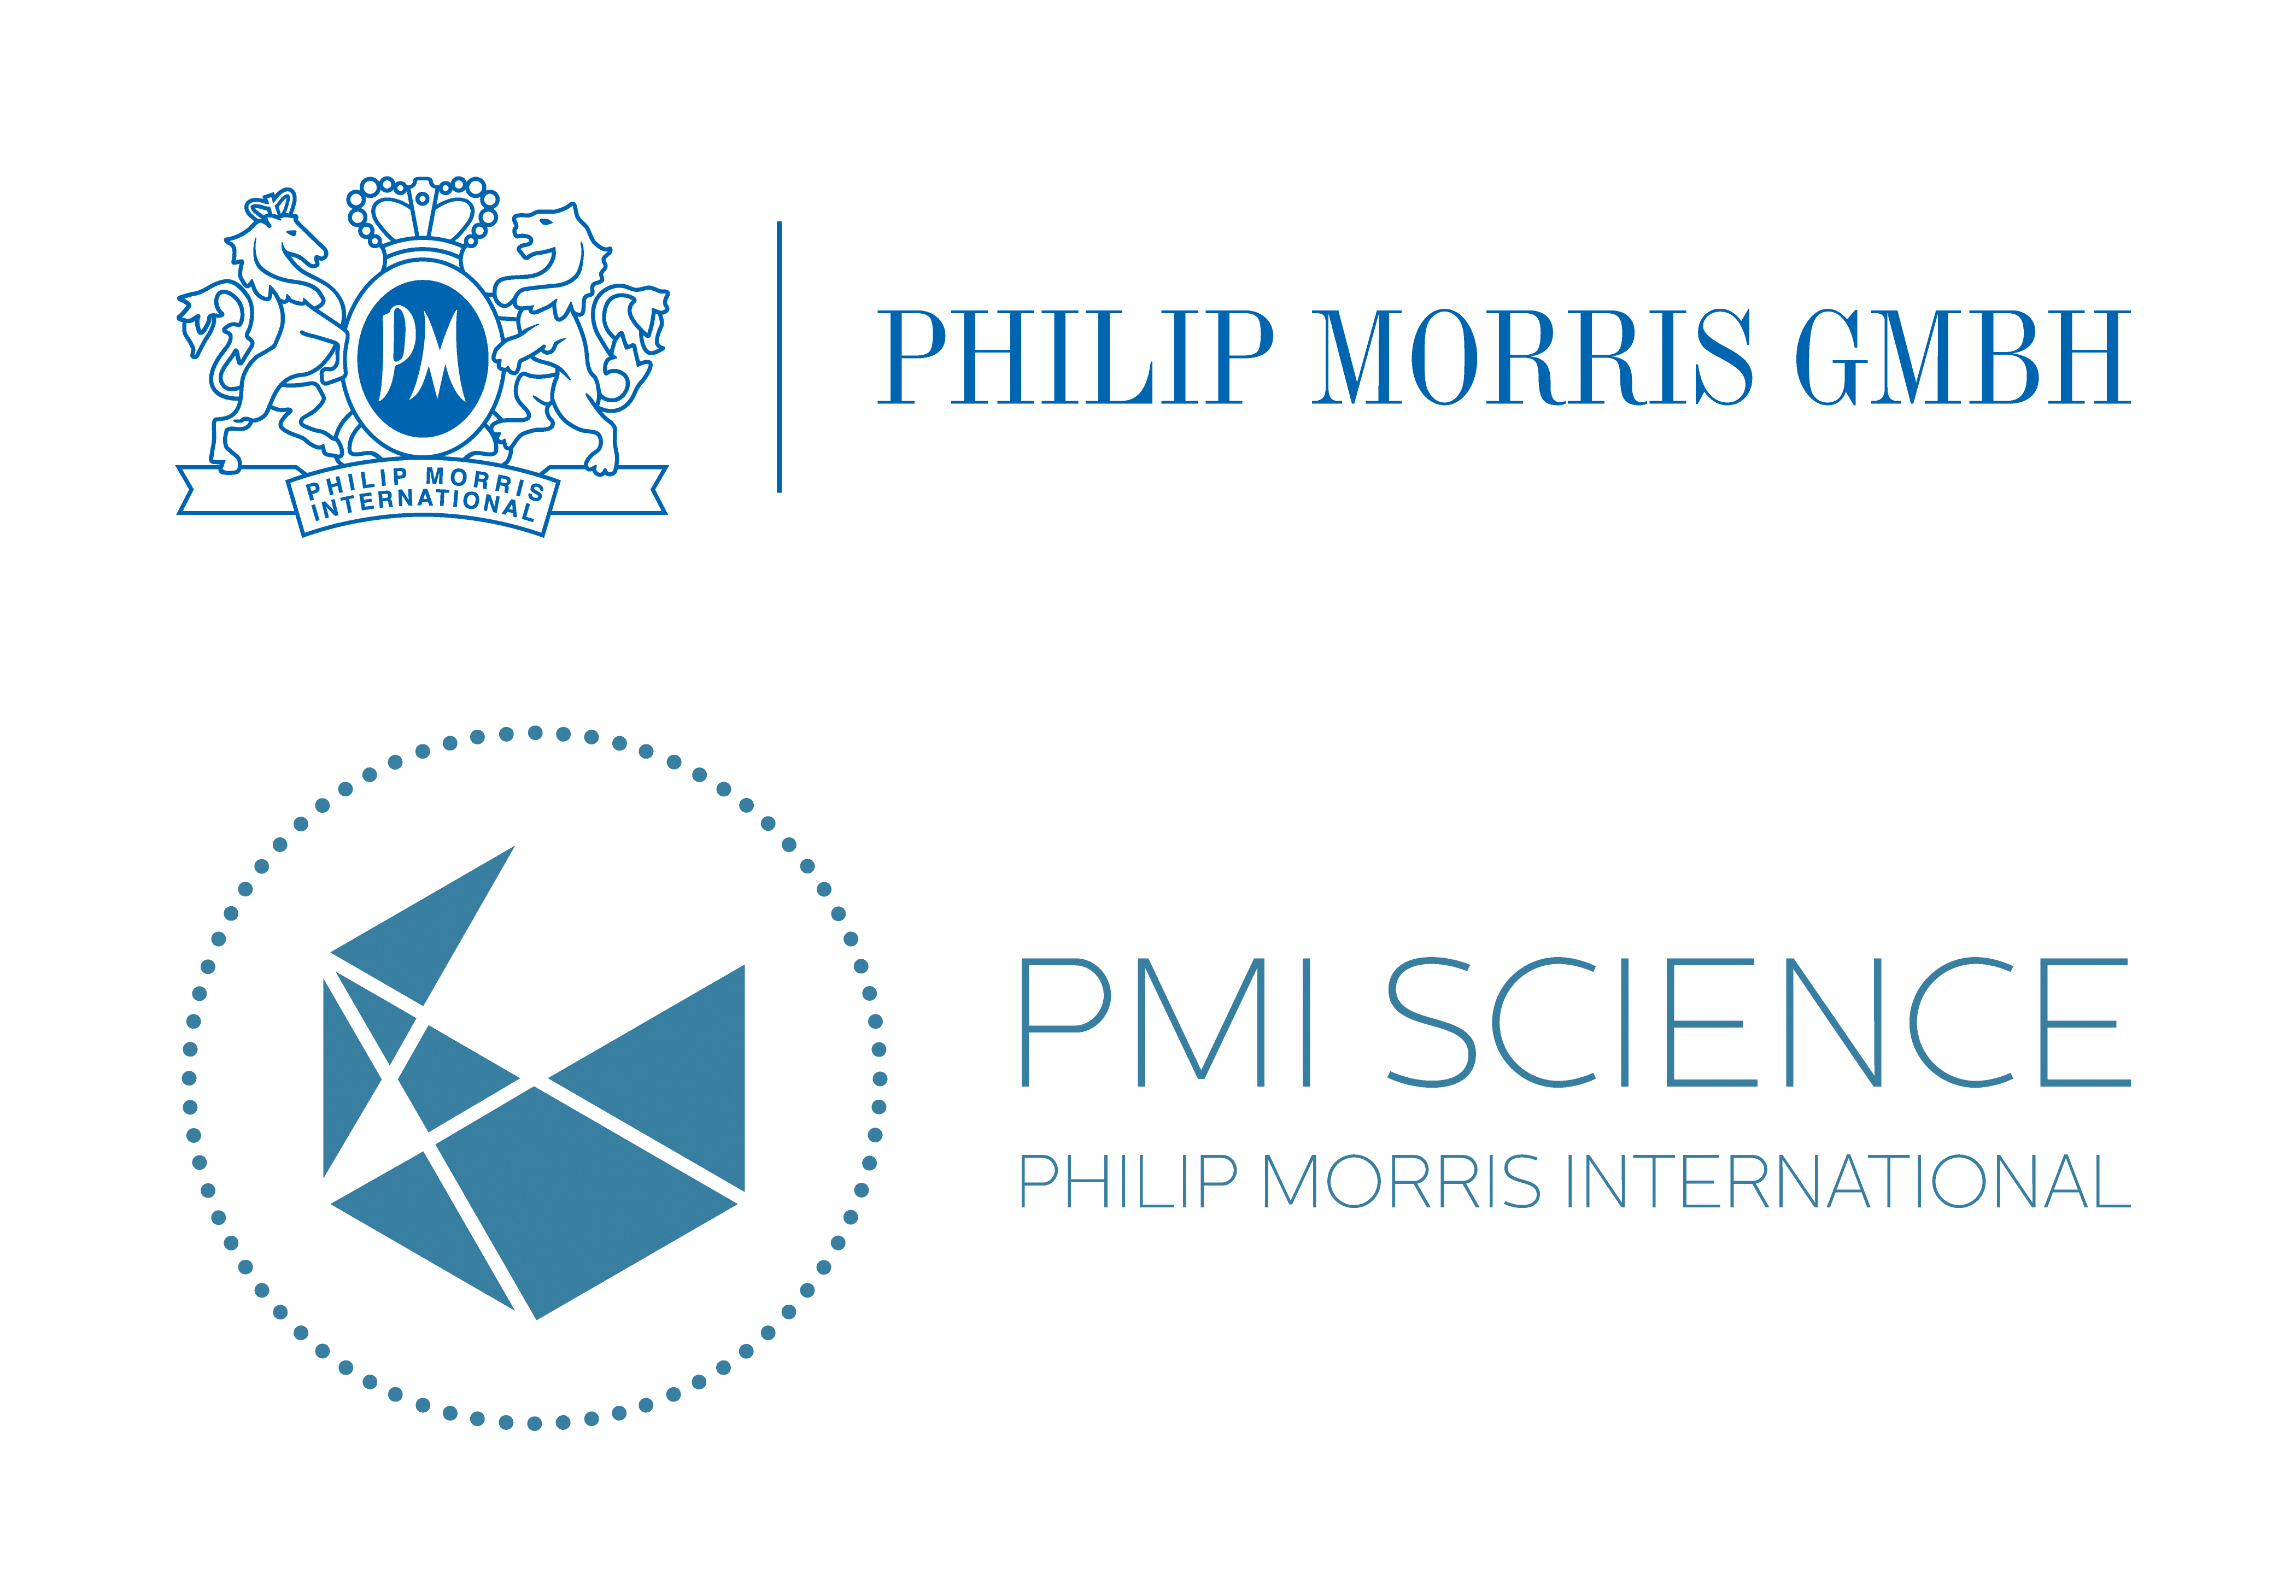 Phillip Morris GmbH